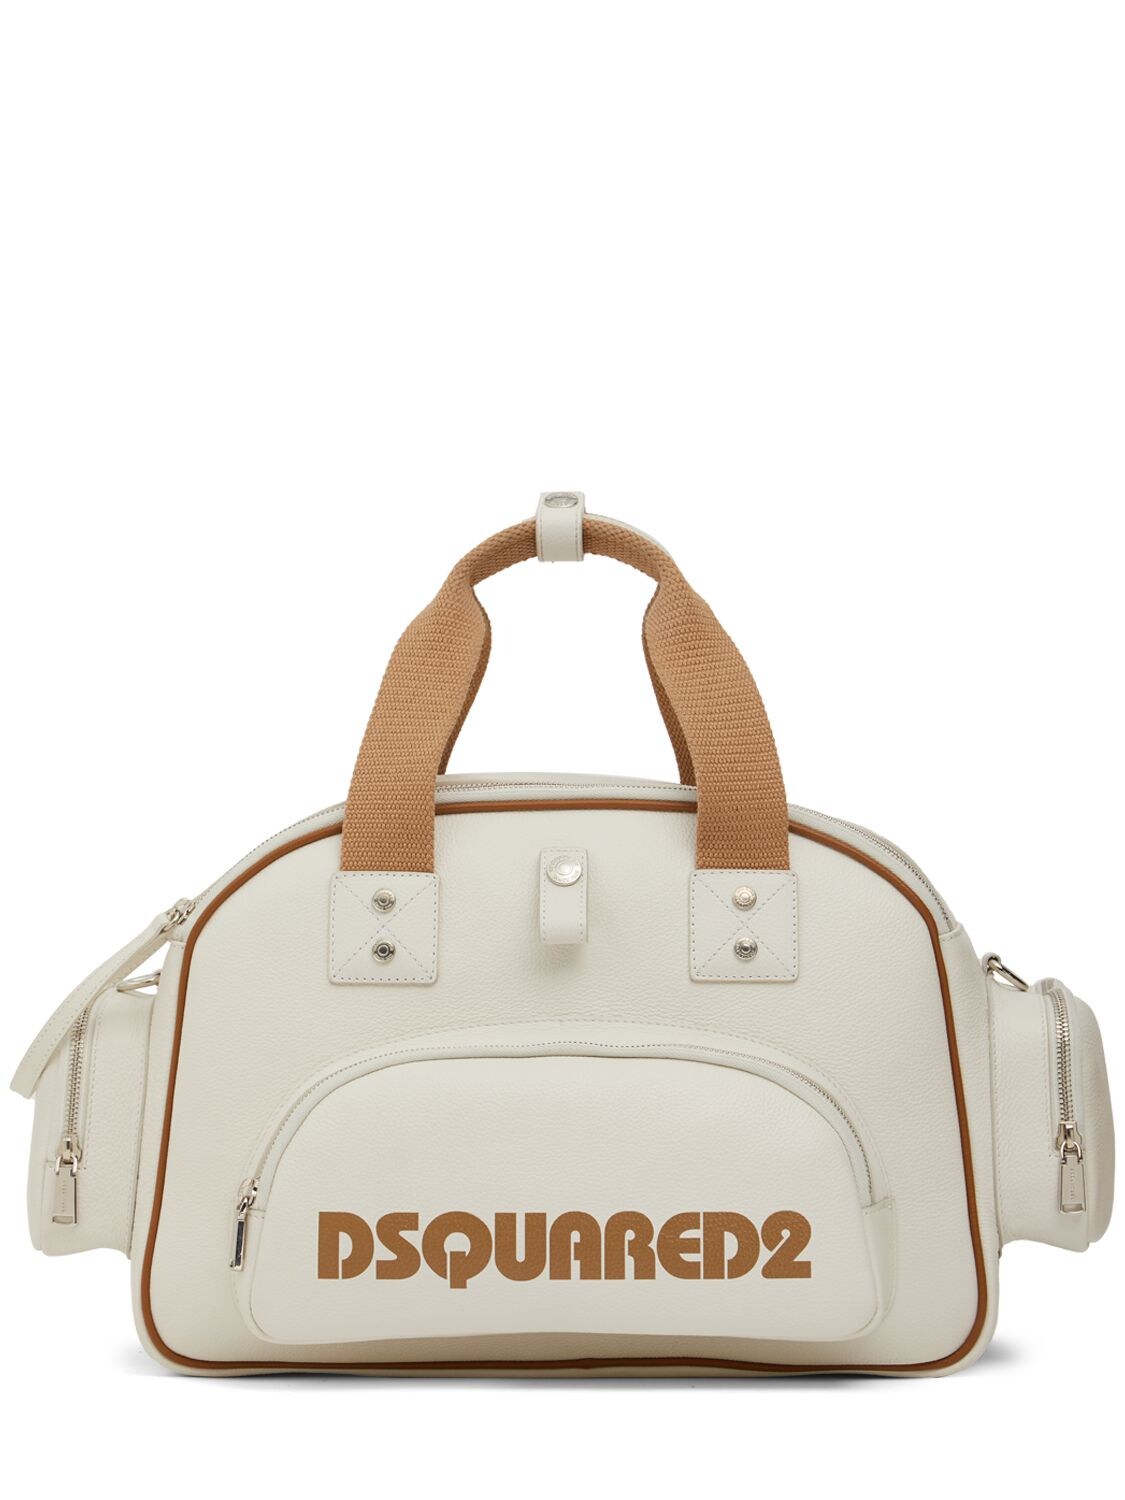 Dsquared2 Logo Duffle Bag – MEN > BAGS > DUFFLE BAGS